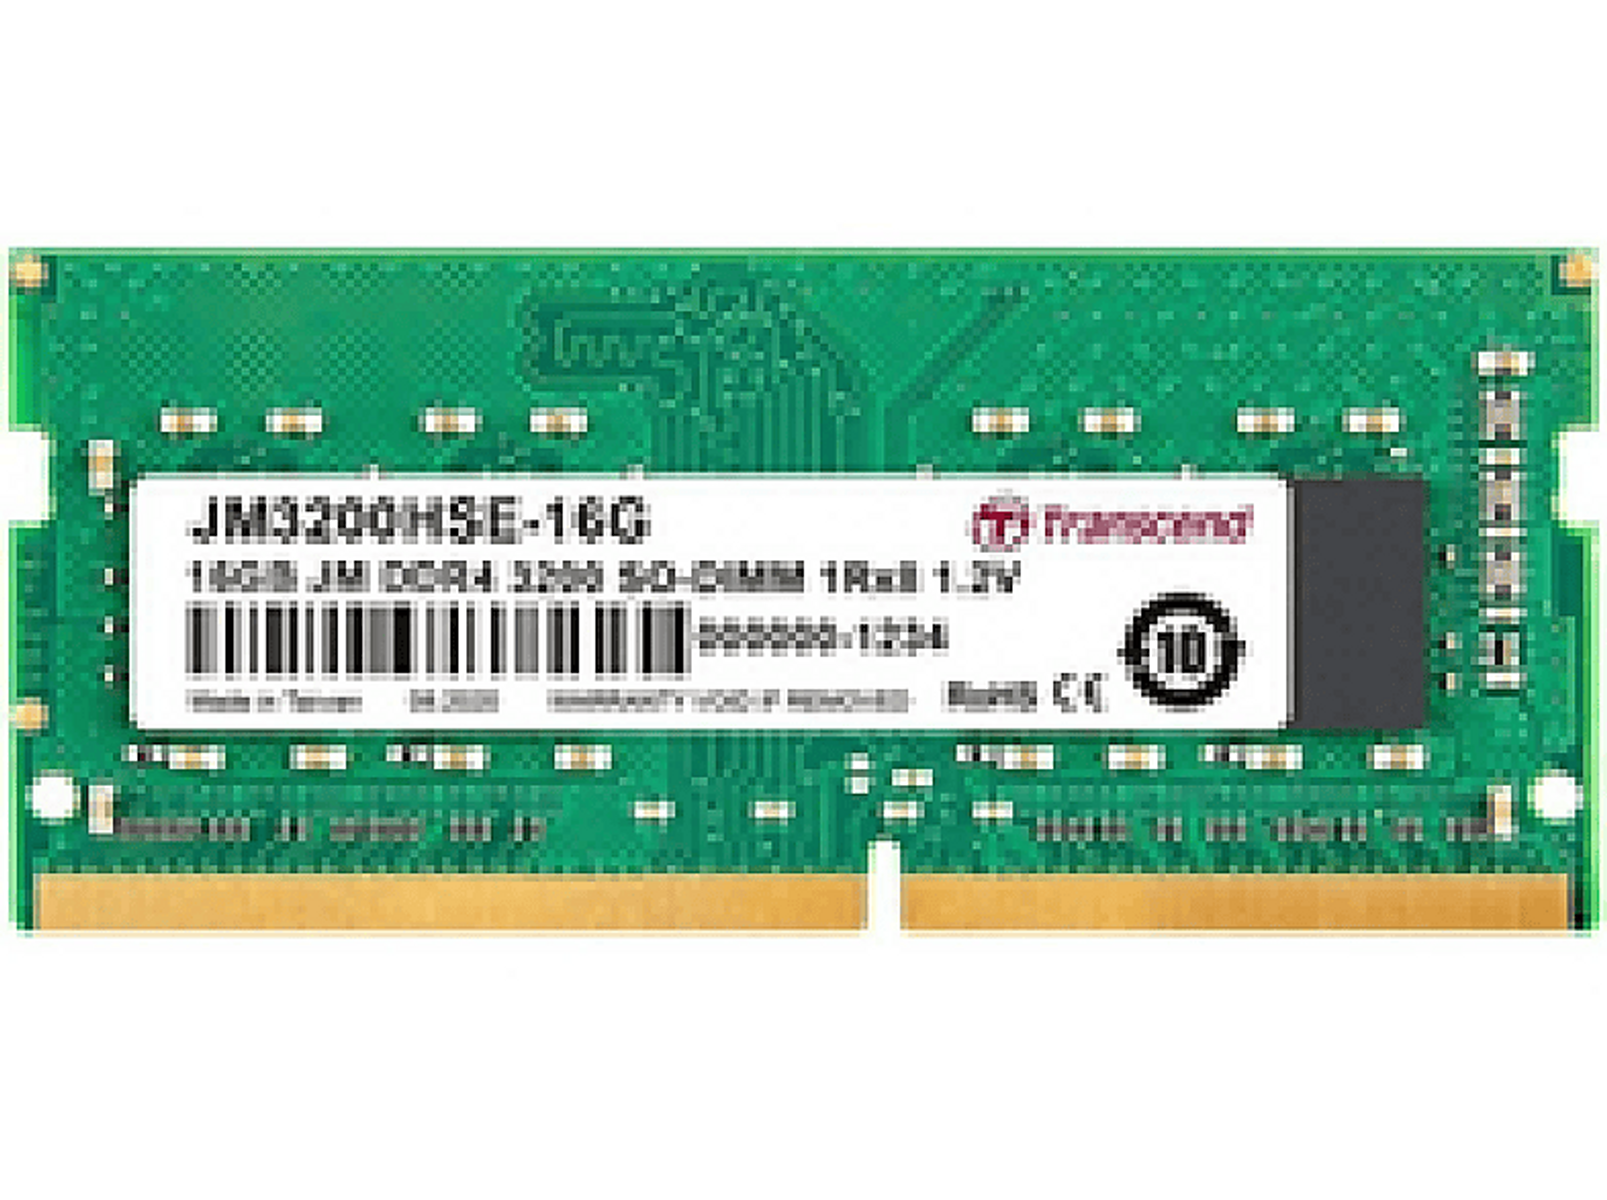 16 DDR4 TRANSCEND GB Arbeitsspeicher JM3200HSE-16G